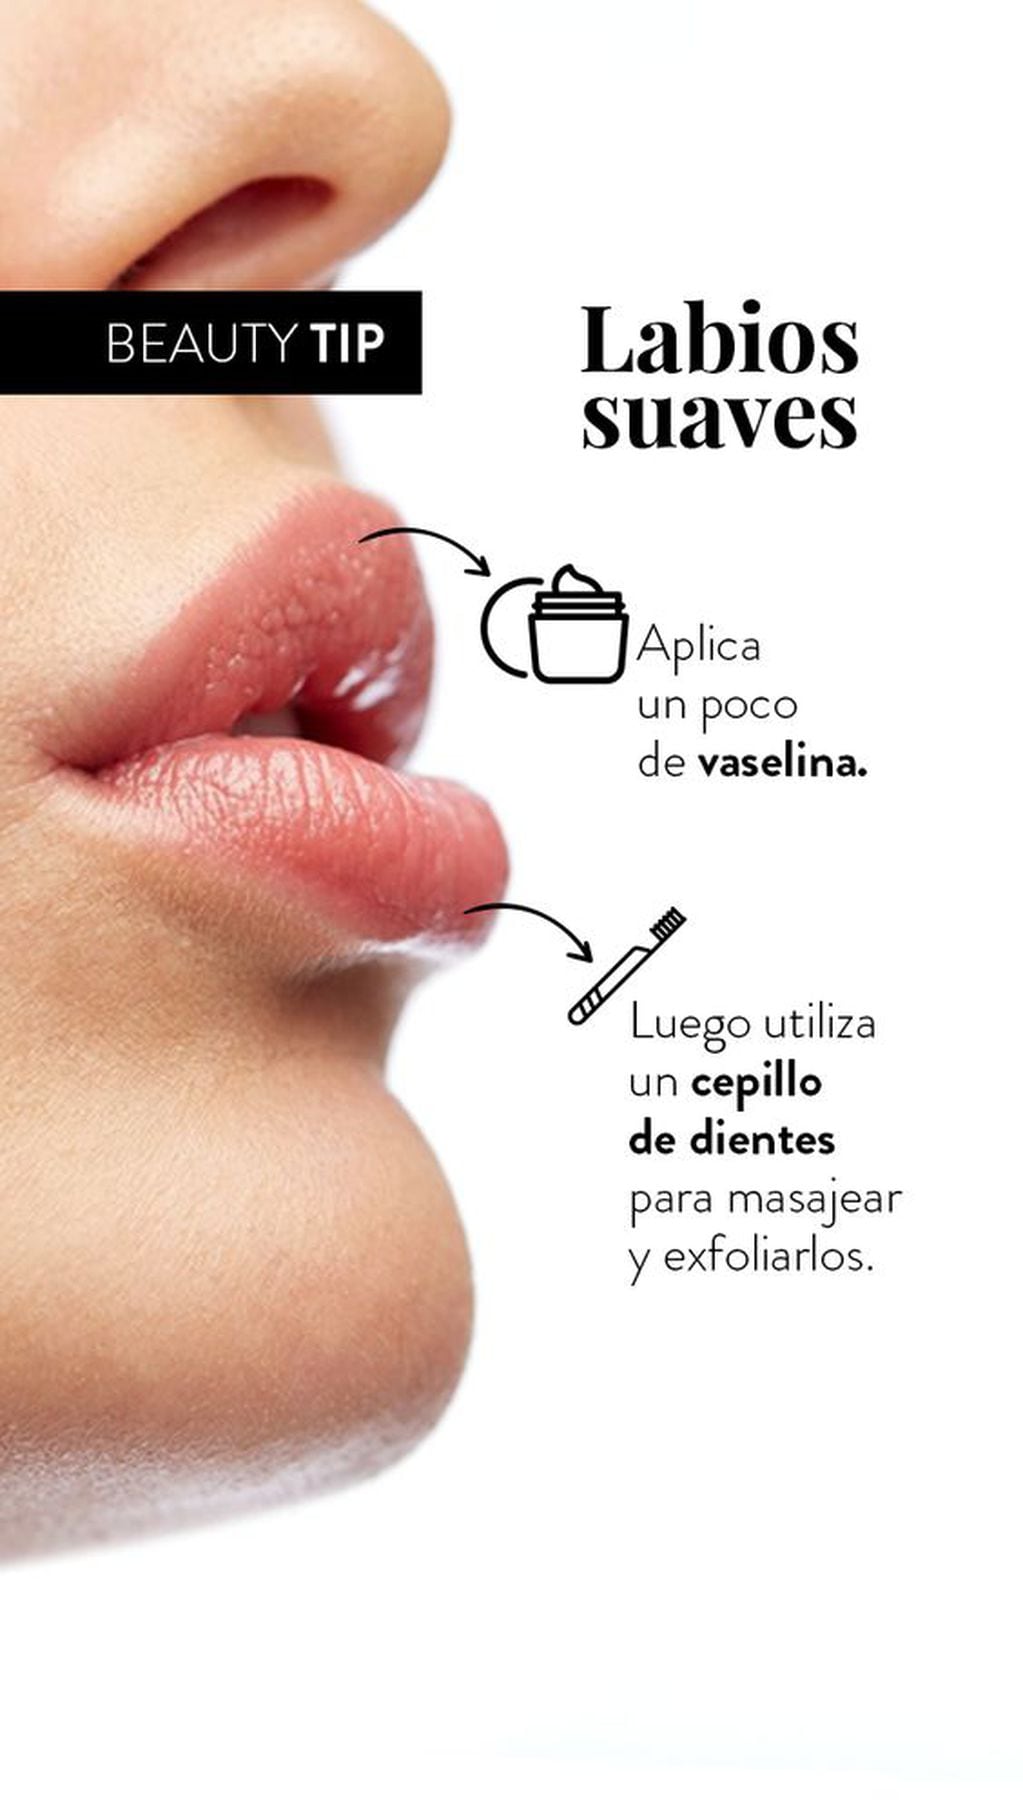 Utilizar vaselina para unos labios suaves y bien cuidados.